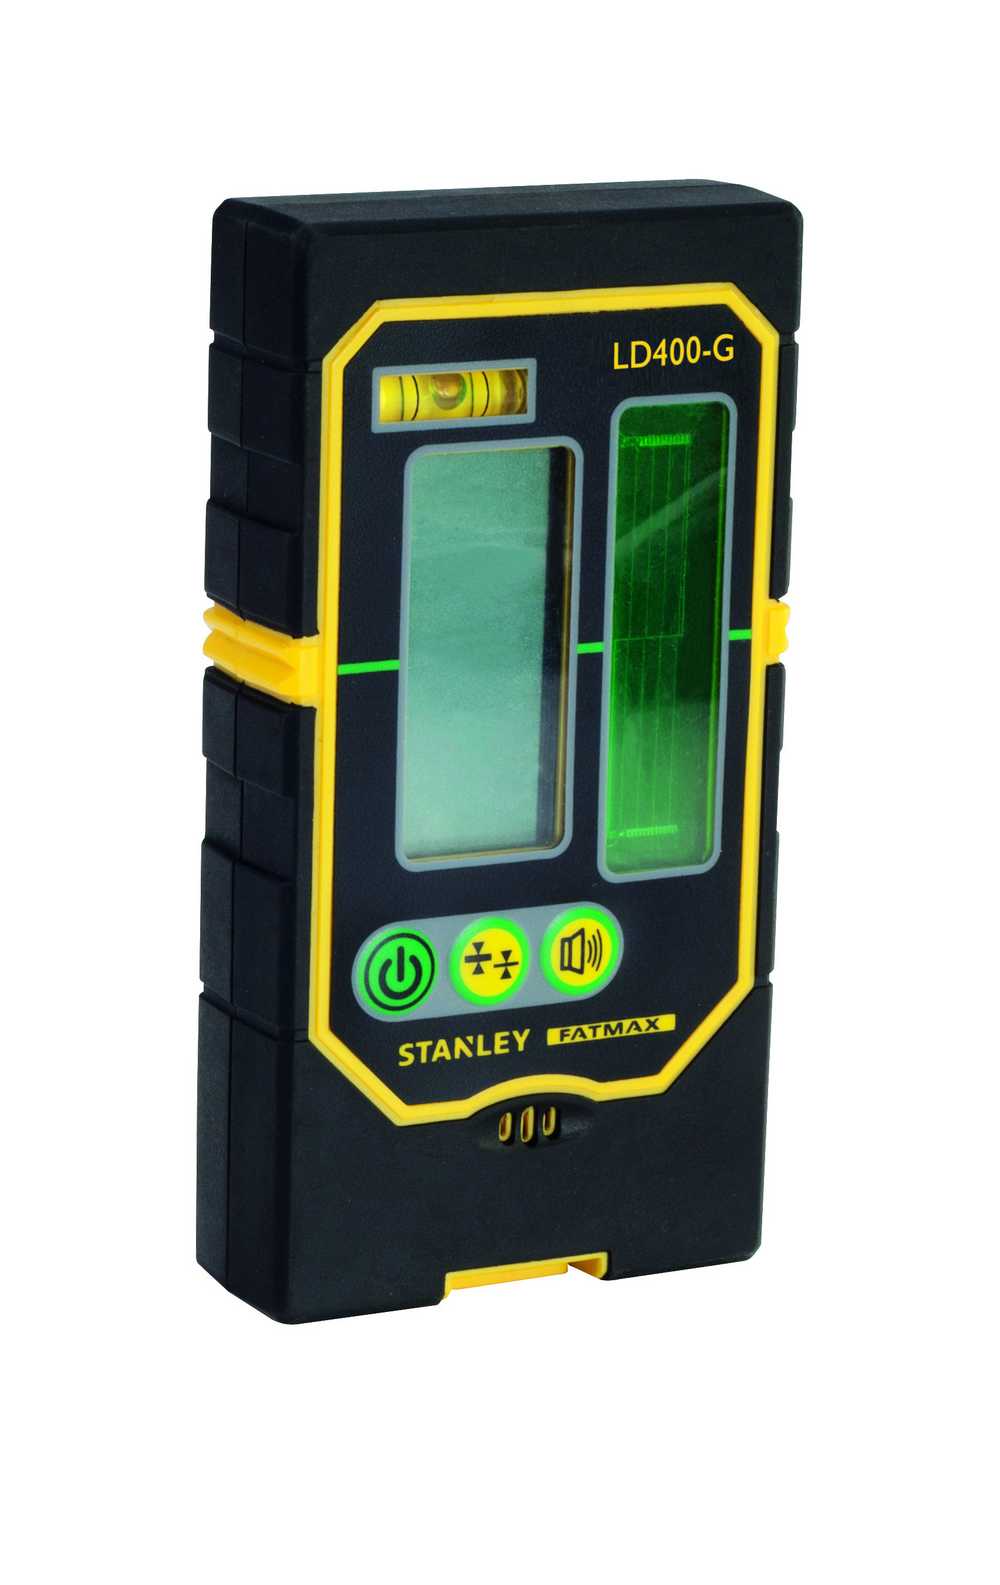 LD400-G lijndetector voor groene straal (voor gebruik met RL